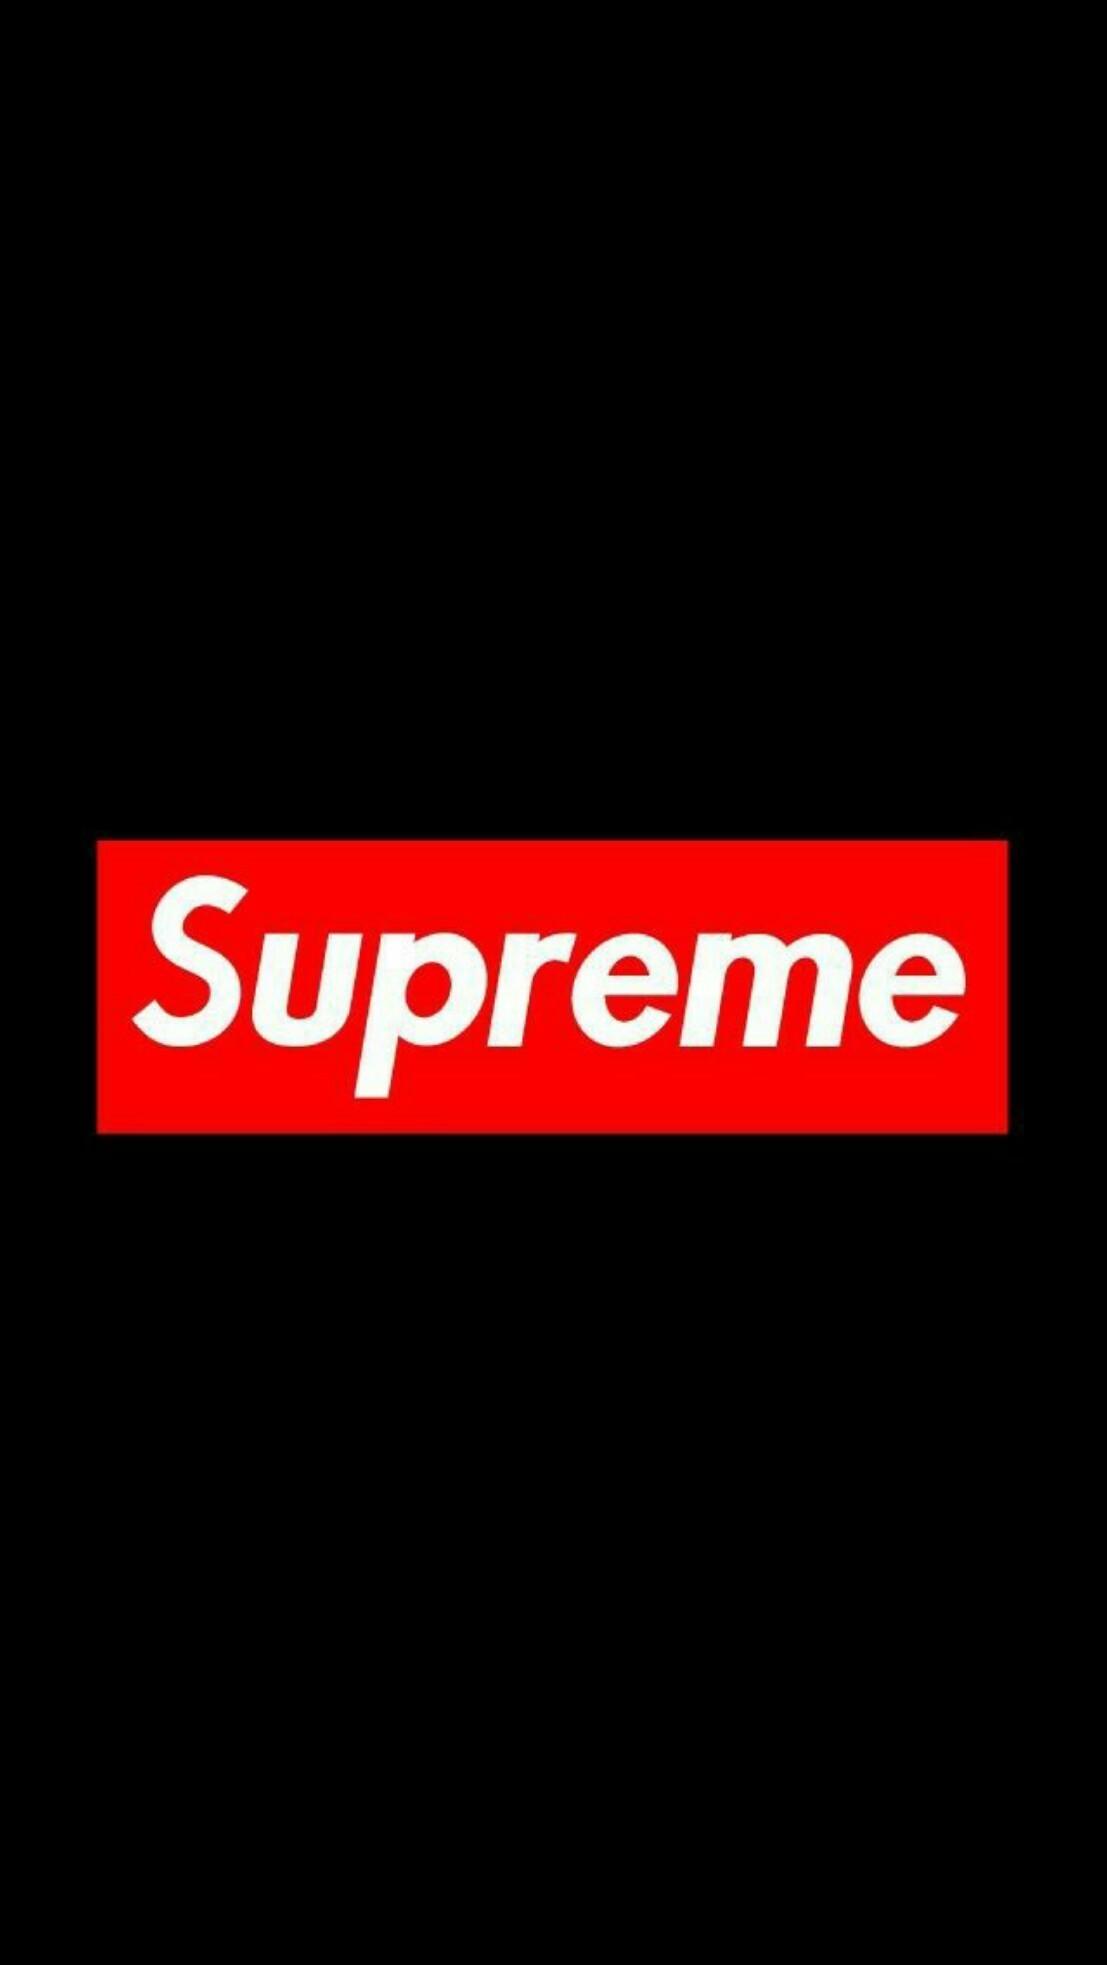 Download Epic Supreme x Gucci Collaboration Wallpaper